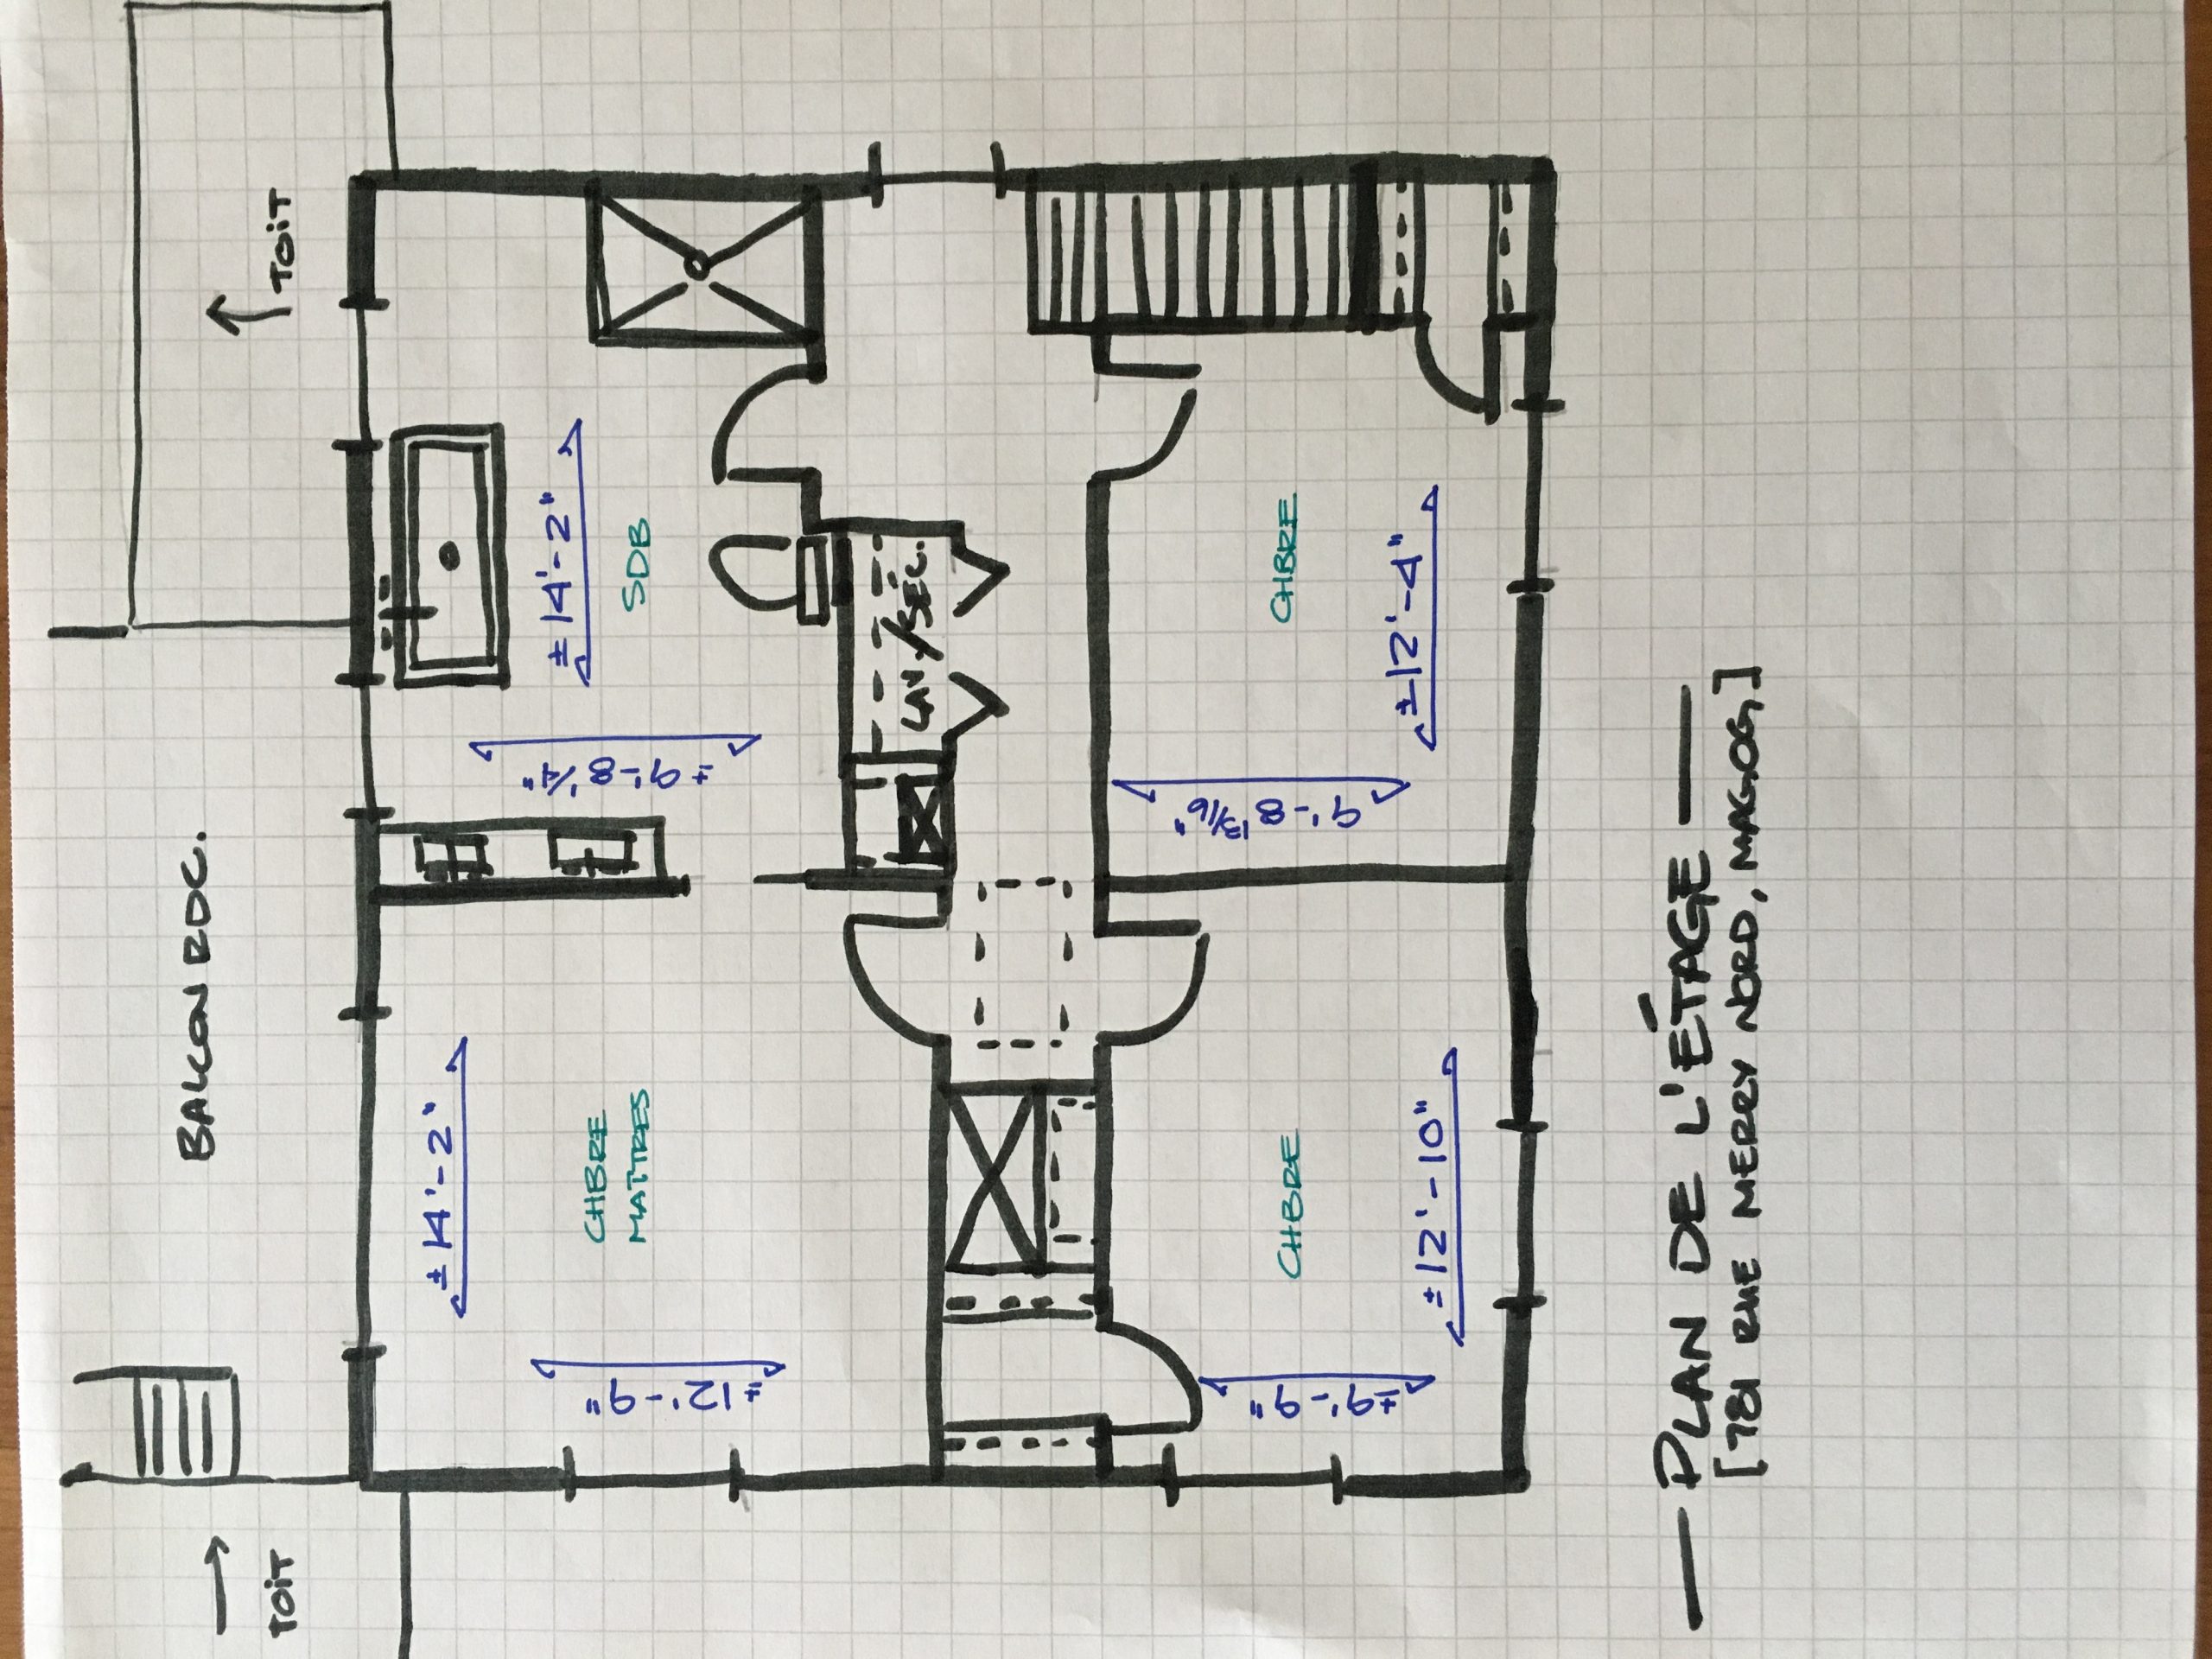 2nd floor Plan